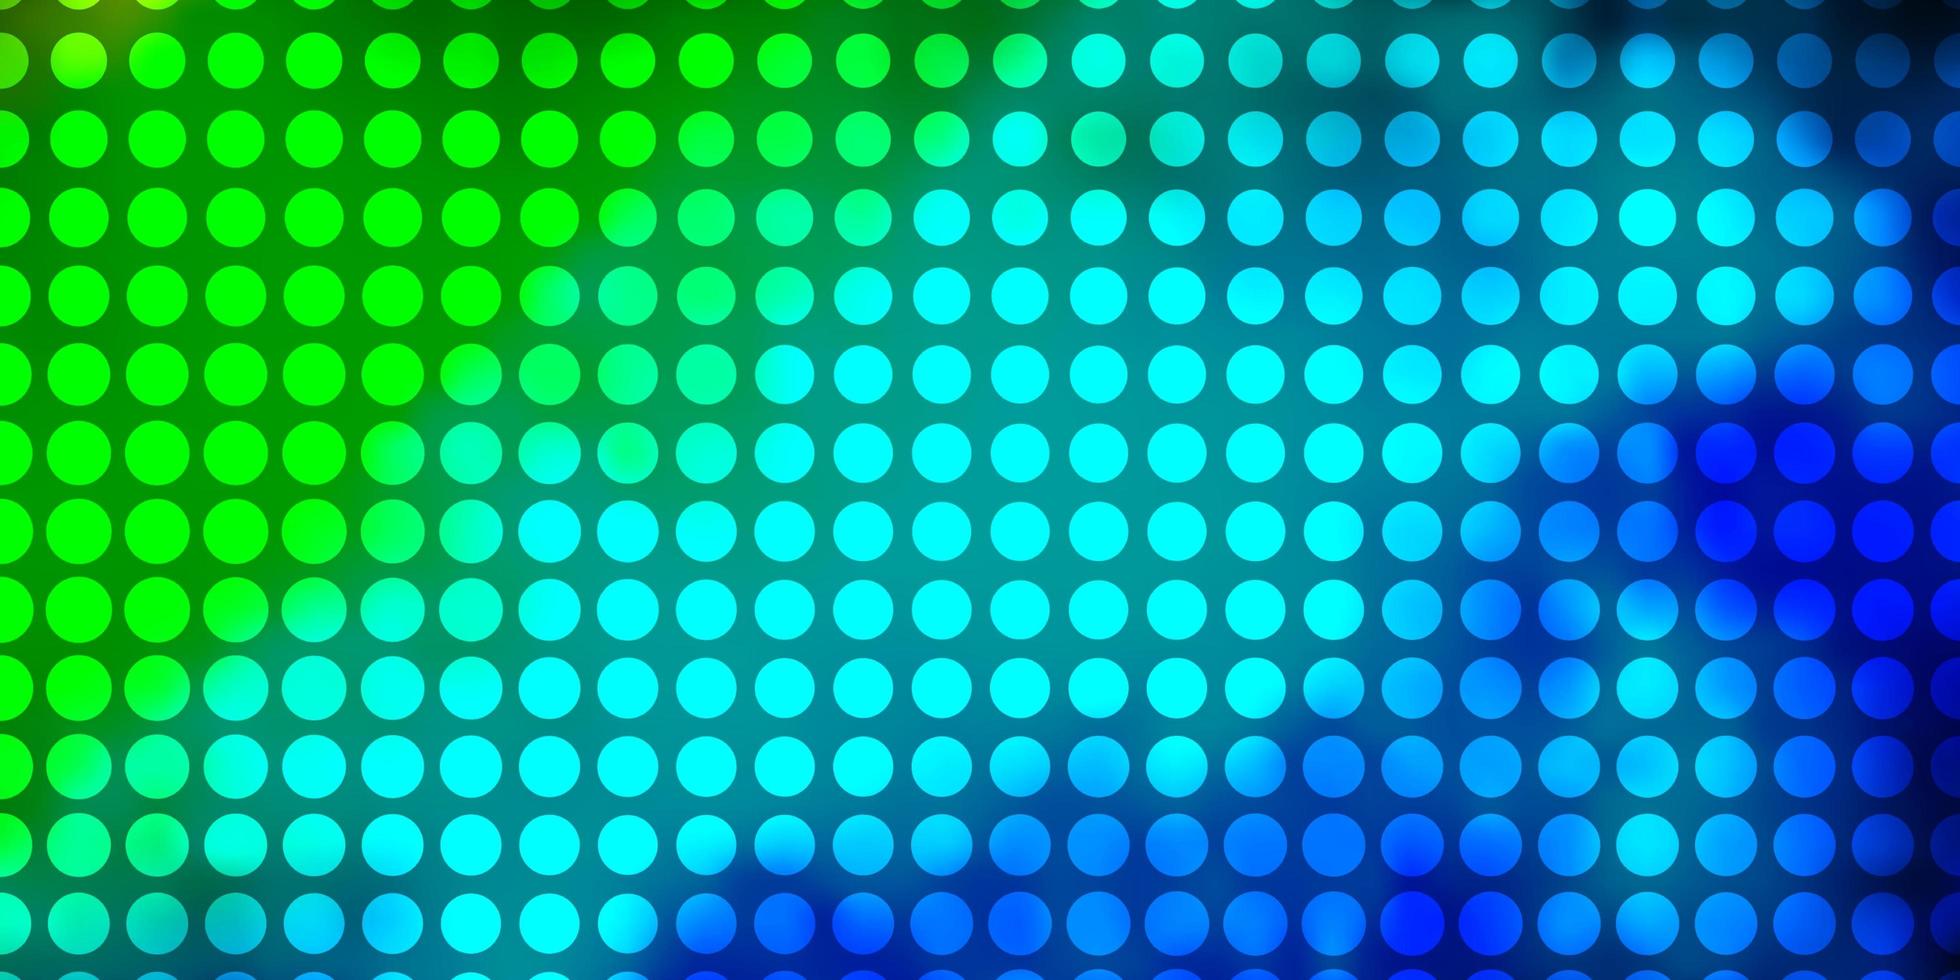 disposition de vecteur bleu clair, vert avec des cercles.